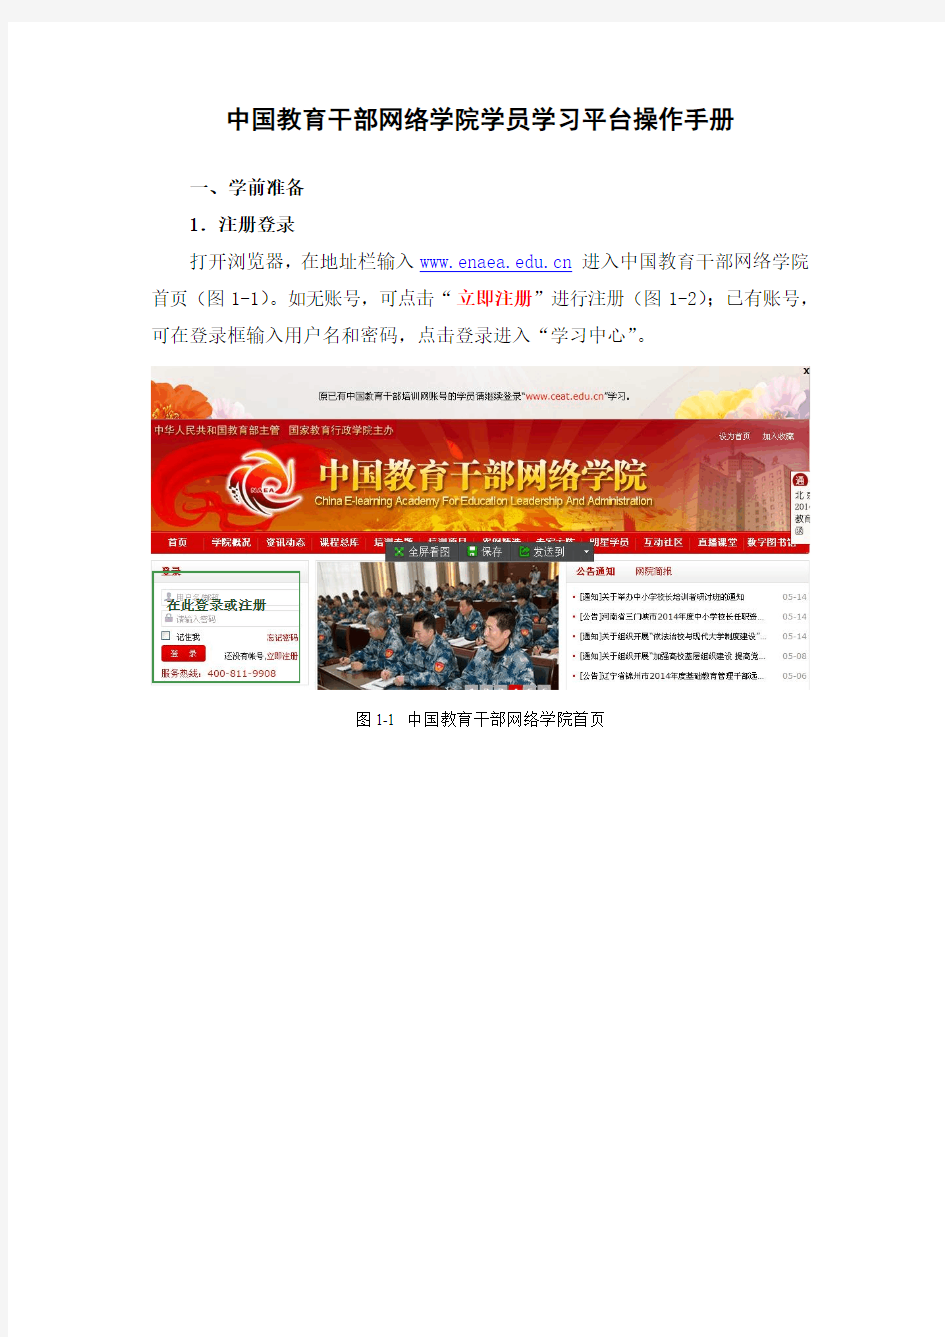 中国教育干部网络学院学员学习平台操作手册20150424